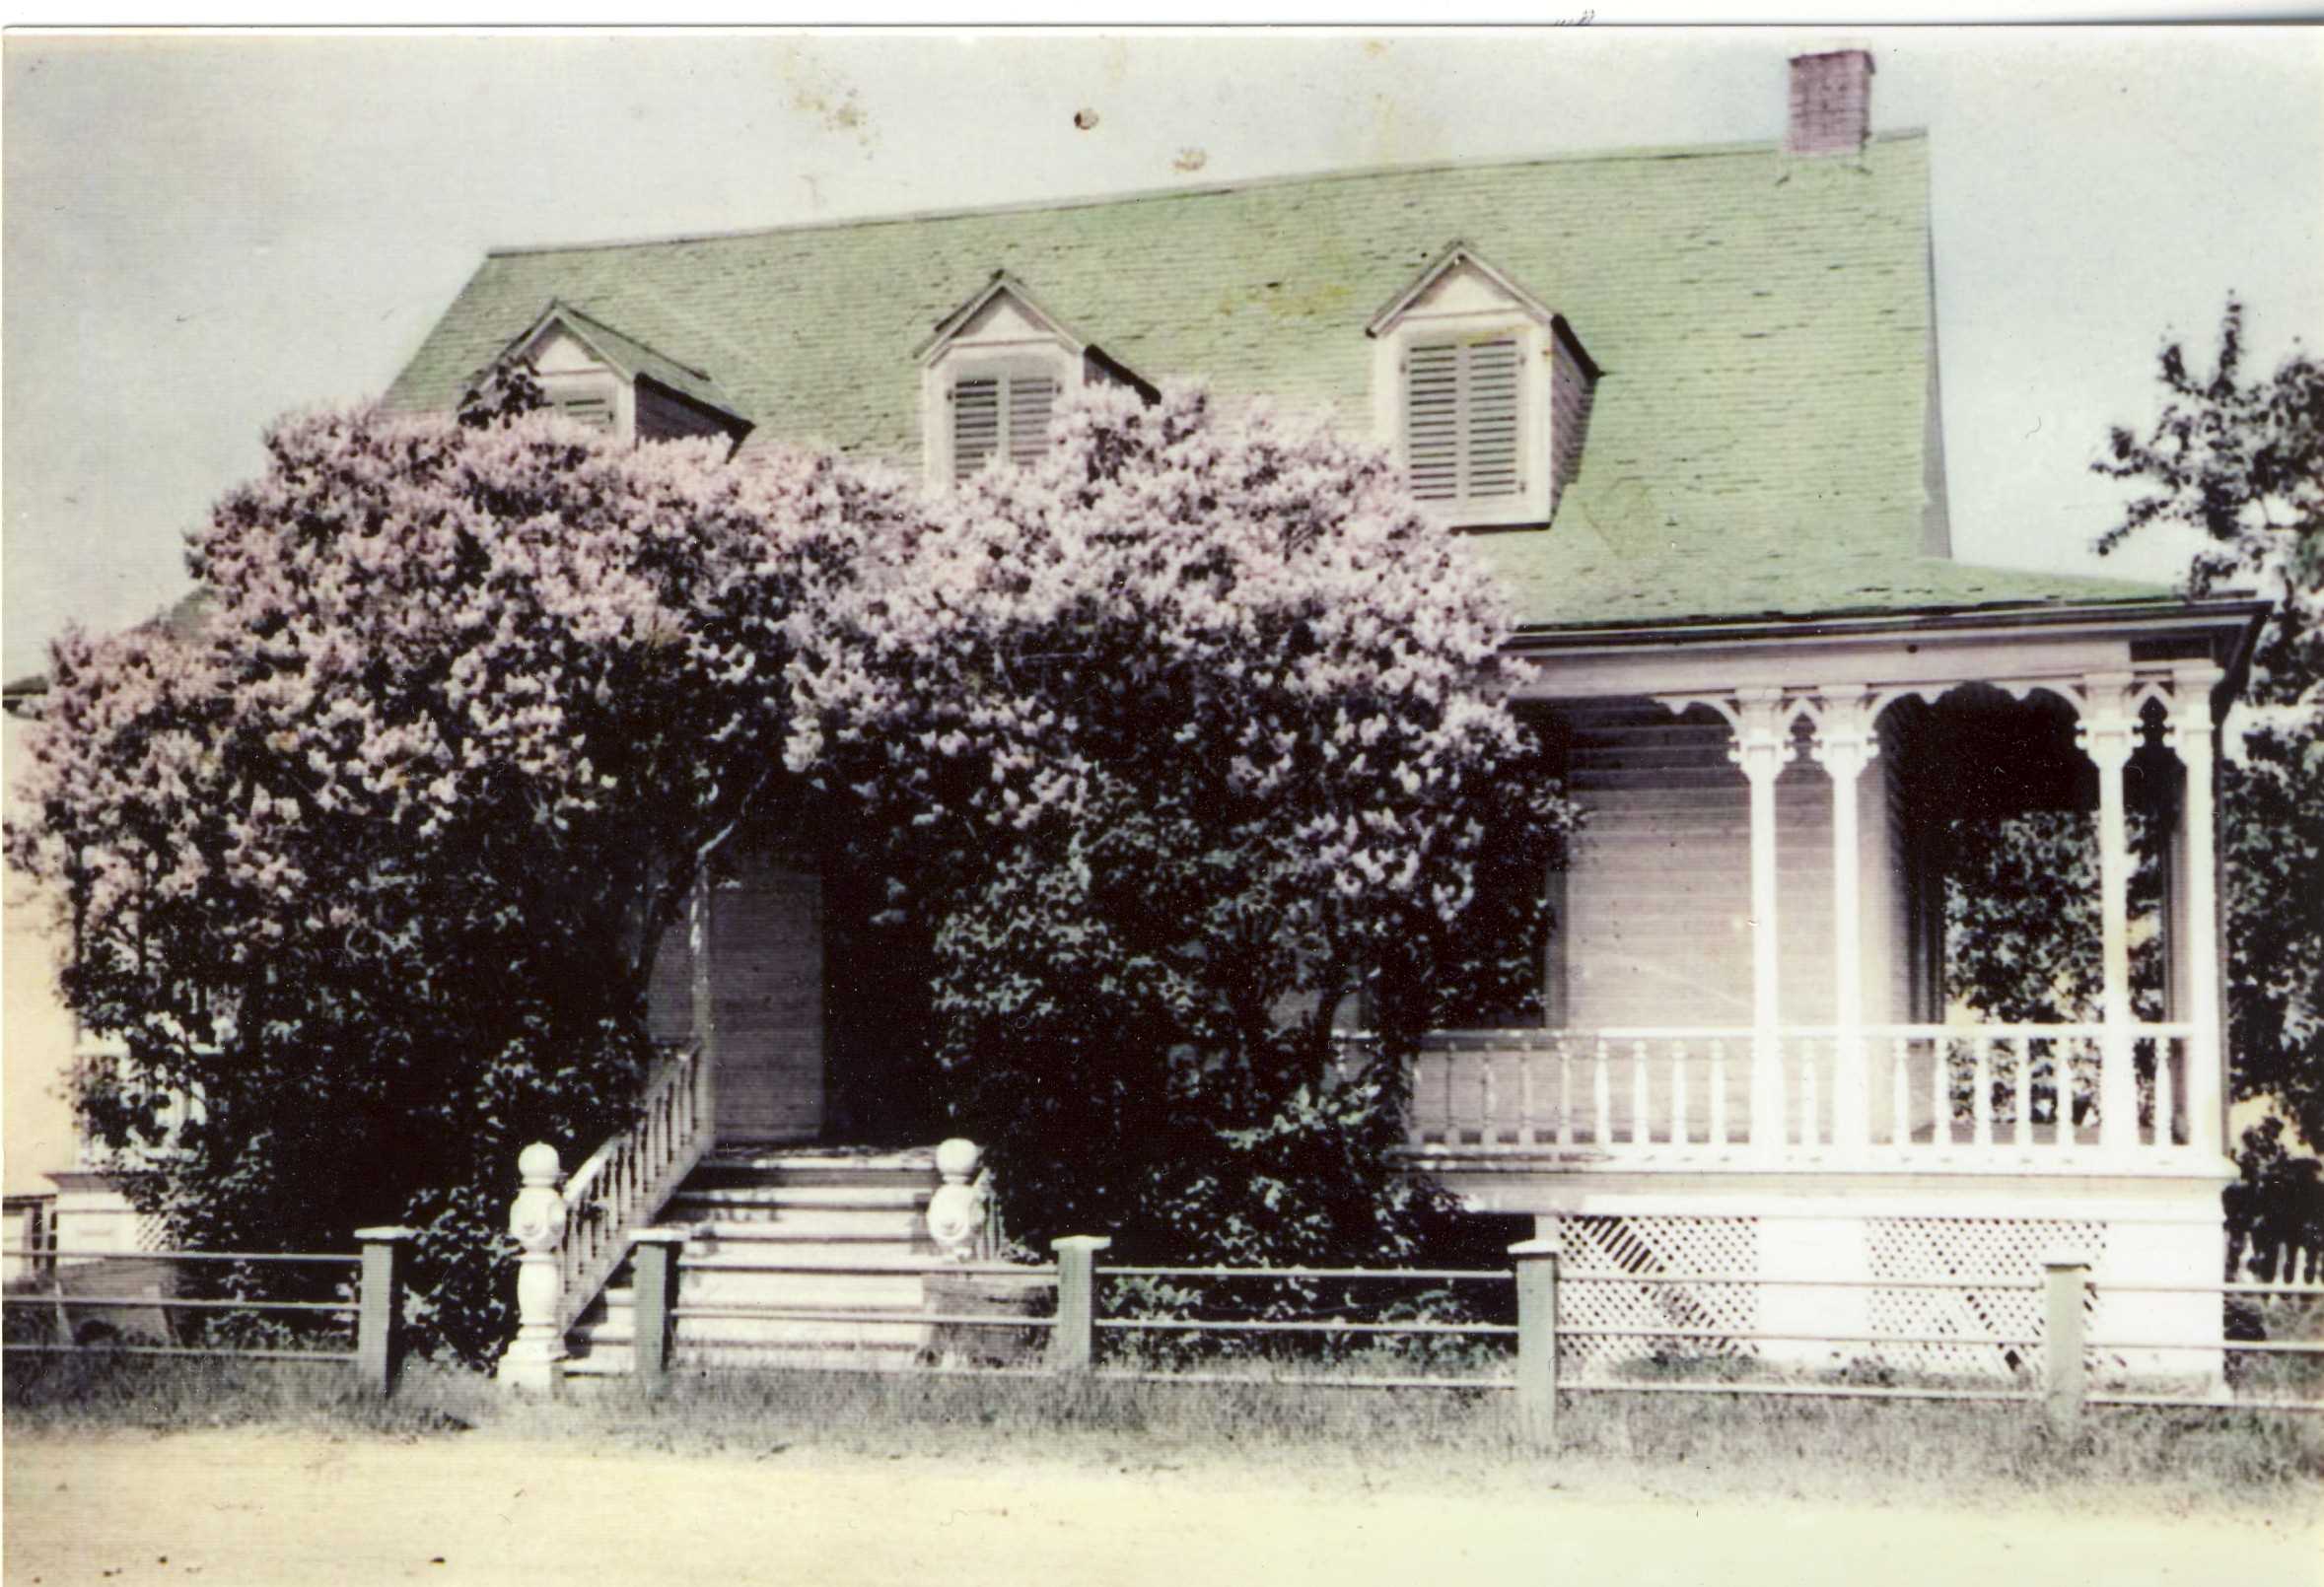 Photographie noir et blanc avec des retouches de couleur, présentant une maison ancienne partiellement cachée par des lilas.